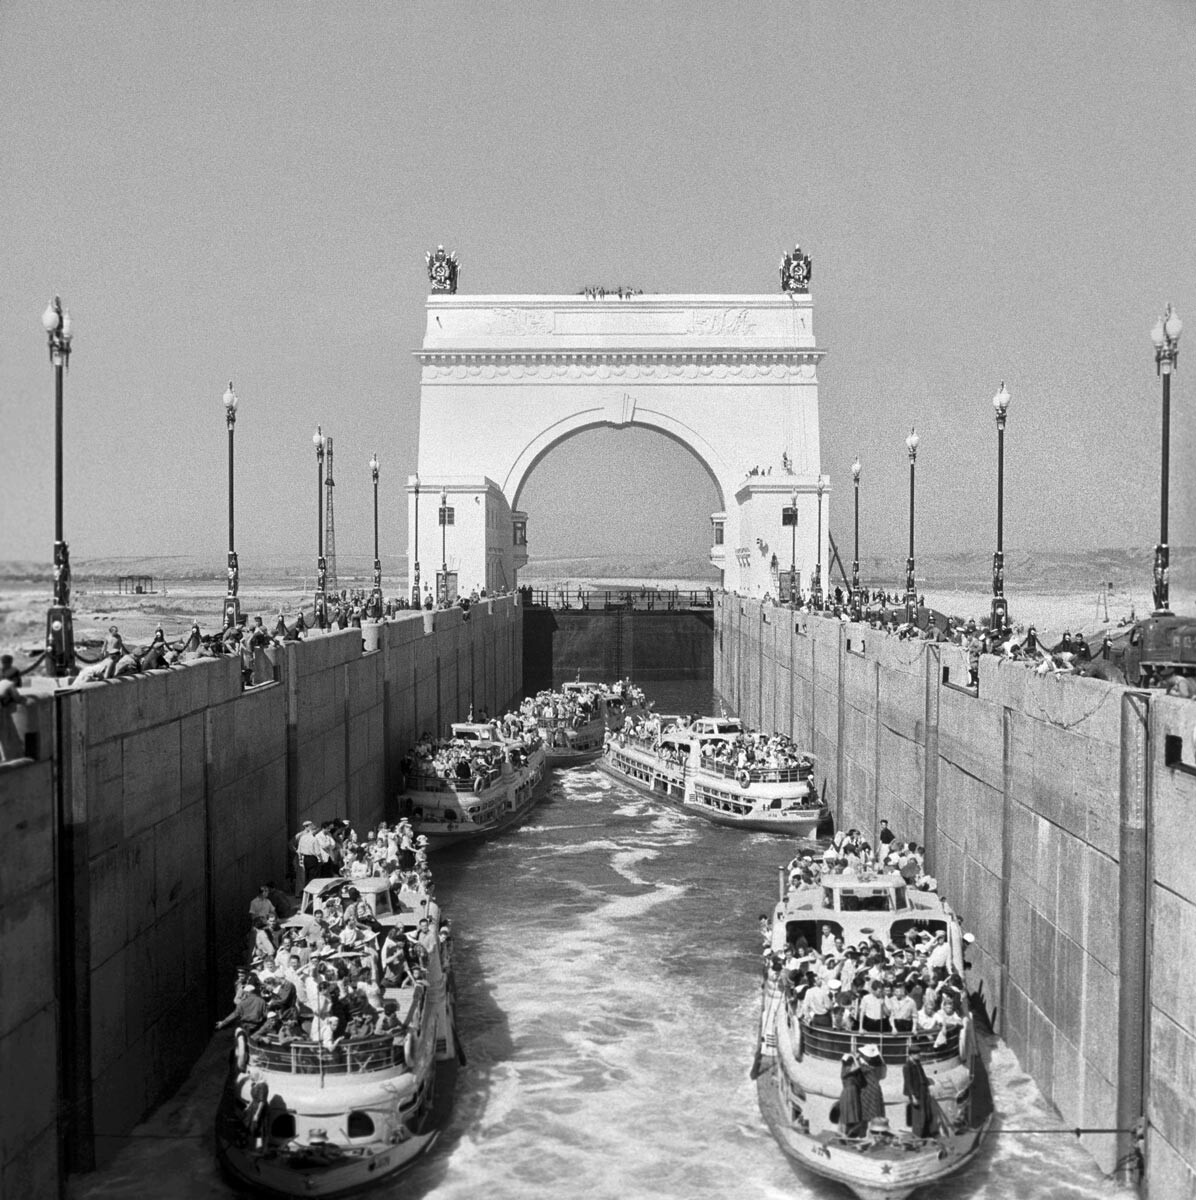 Une écluse du canal reliant la Volga au Don, région de Stalingrad, 1952. 